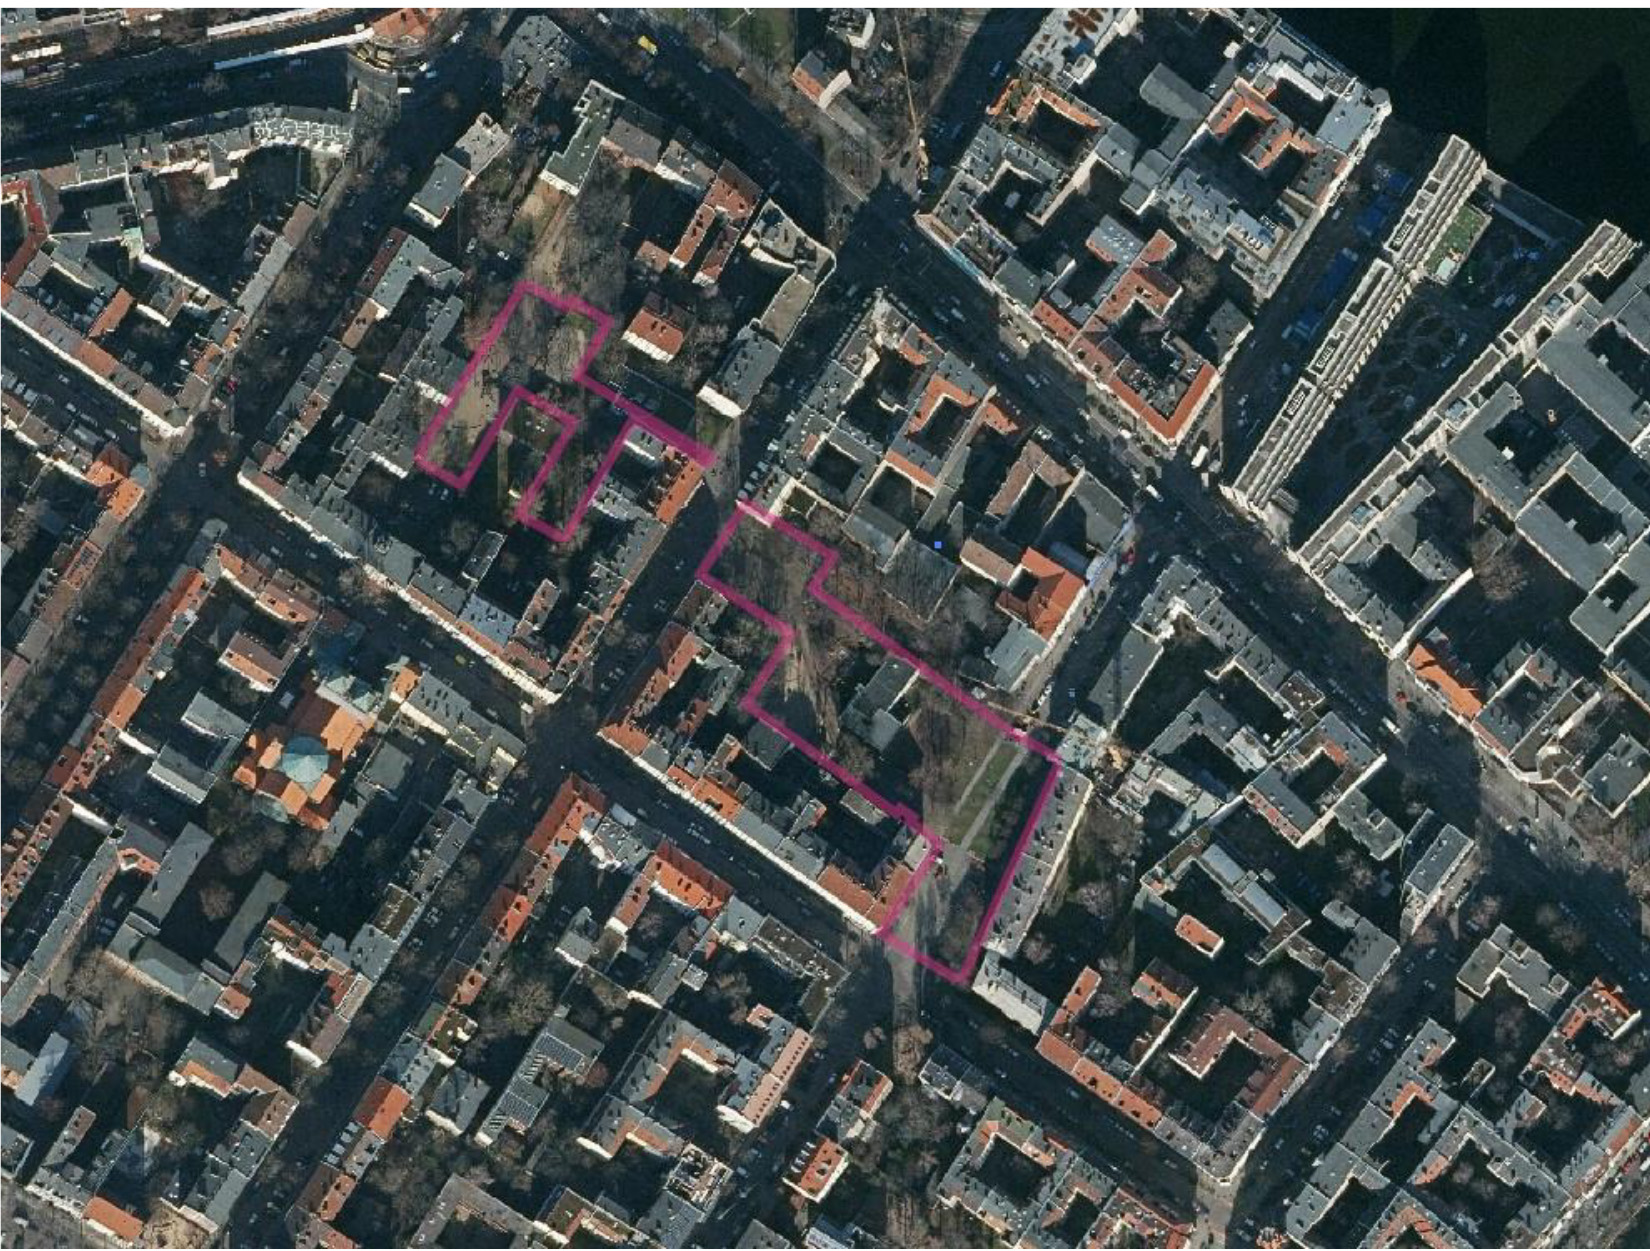 Luftbild des Wettbewerbsgebiets © Geoportal Berlin, Änderungen Stadtkontor GmbH